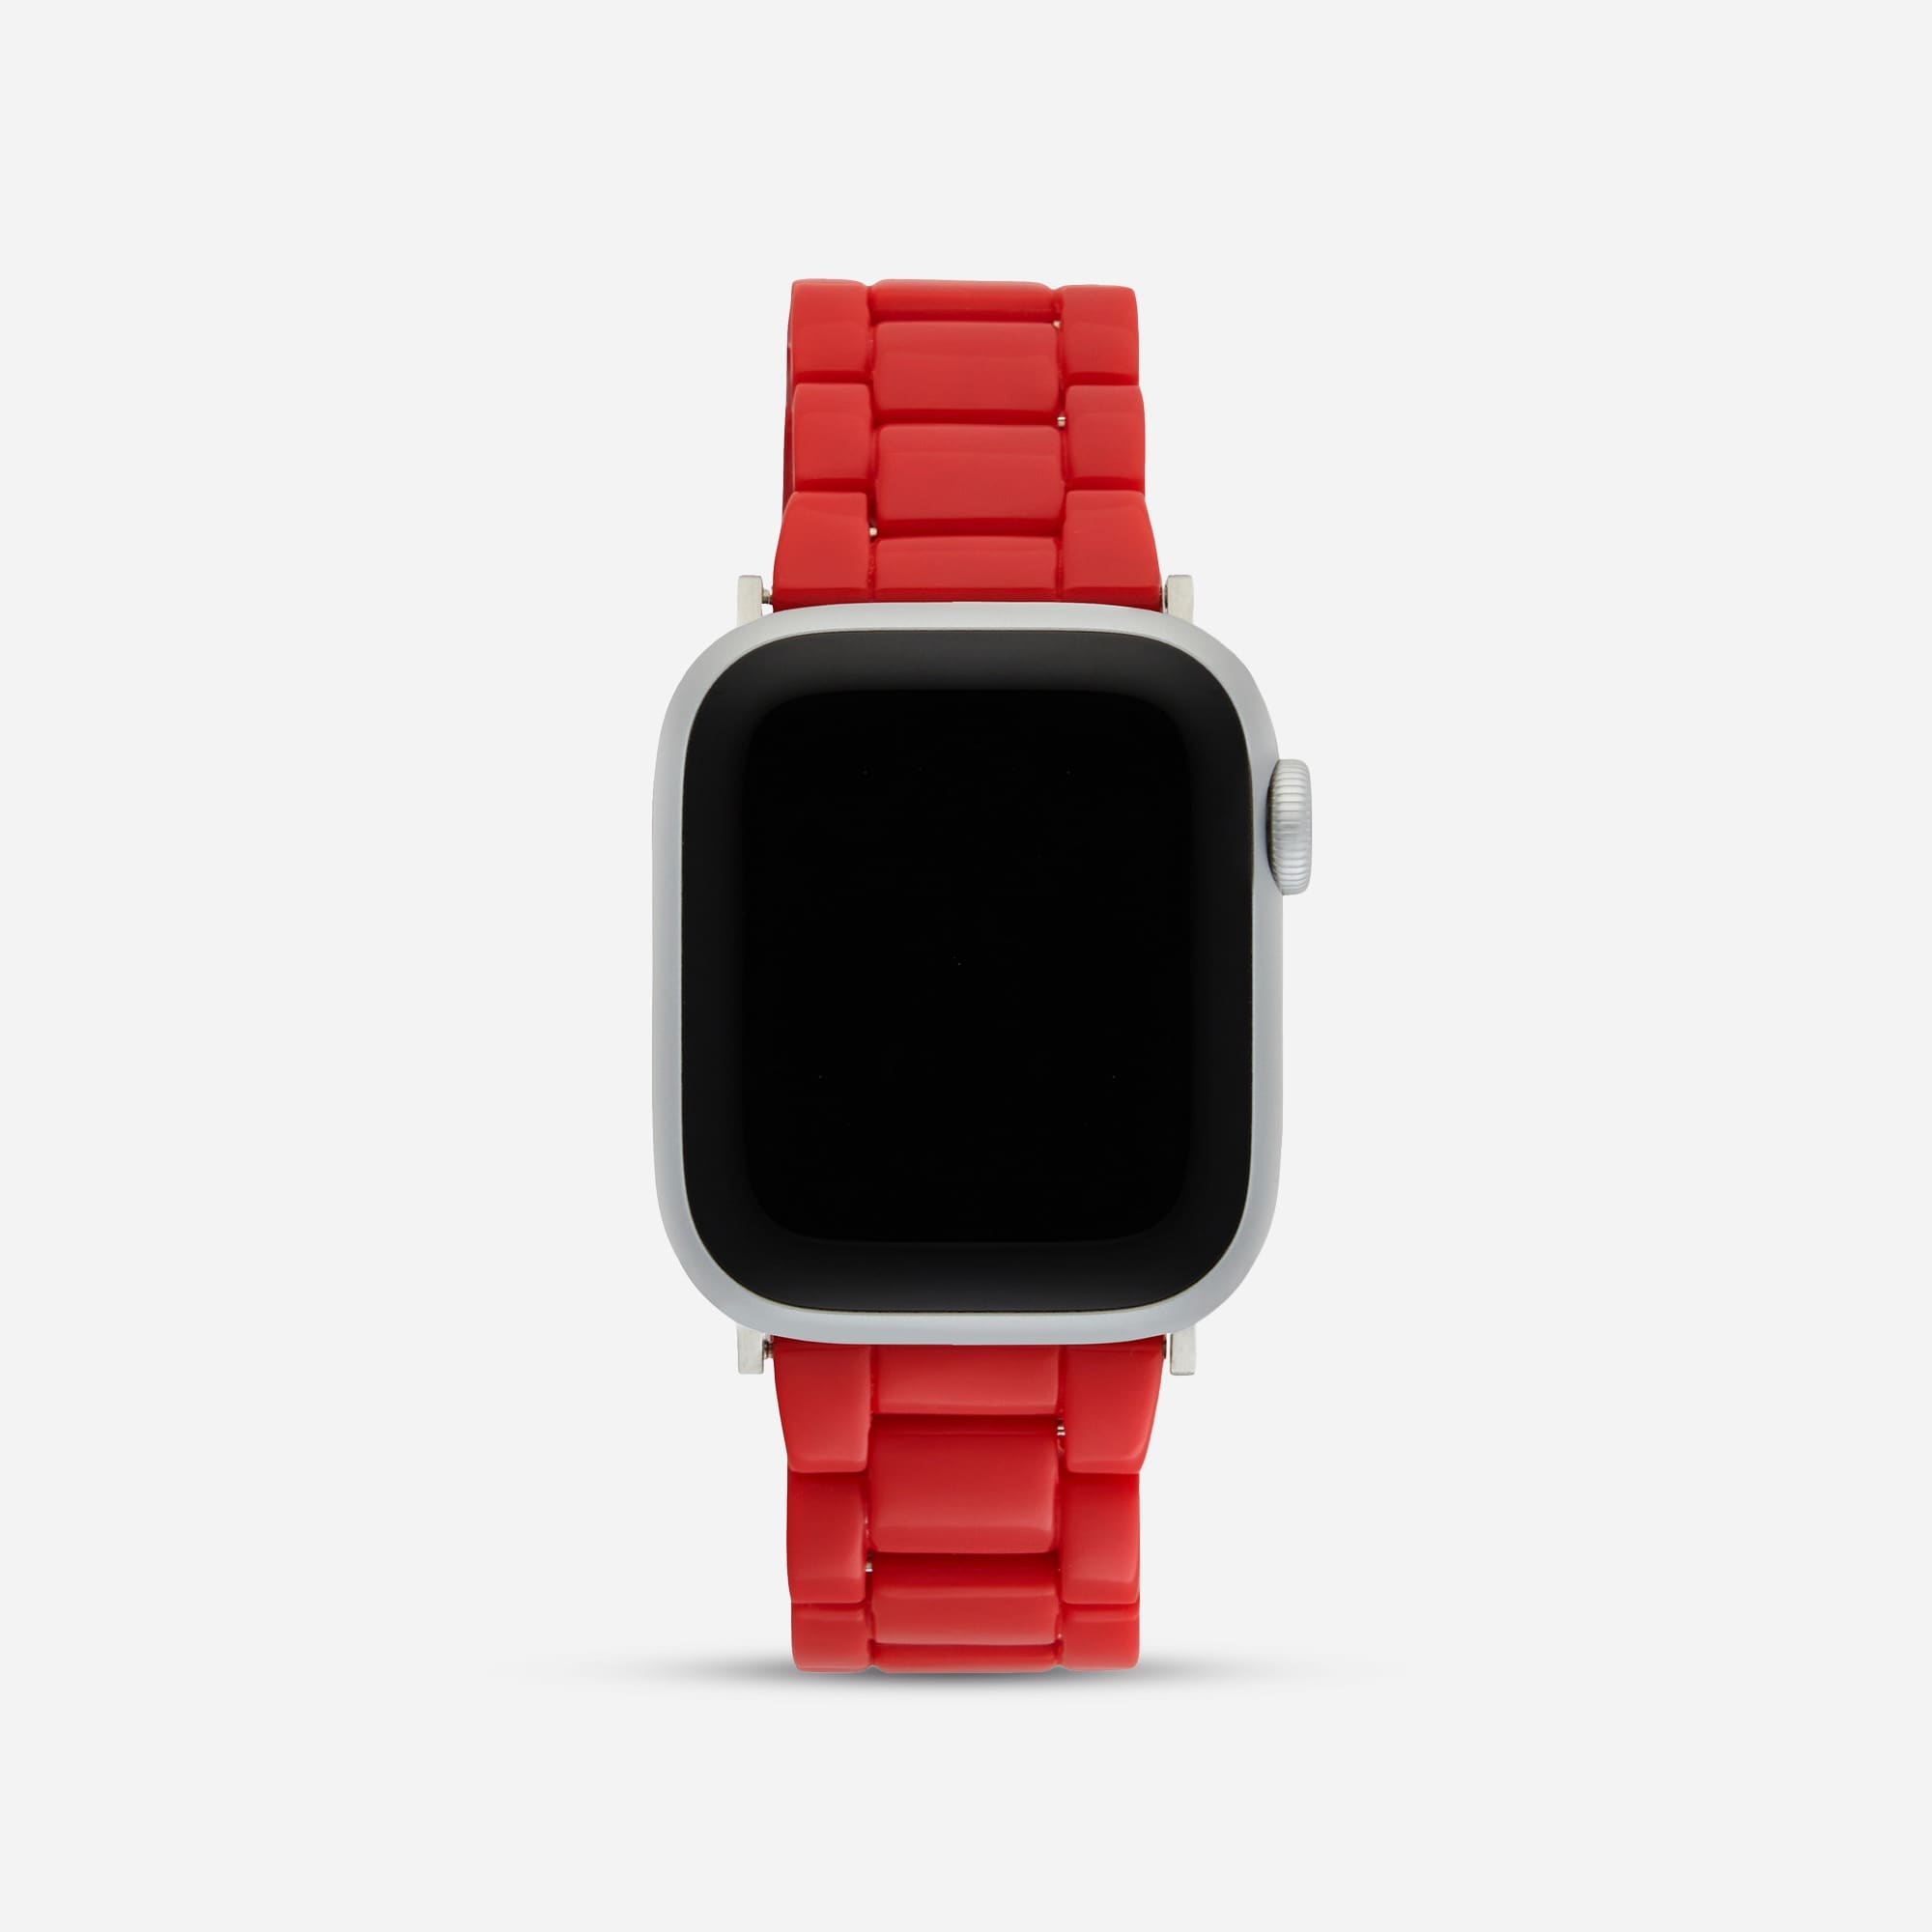 Jcrew MACHETE Apple Watch band in universal fit